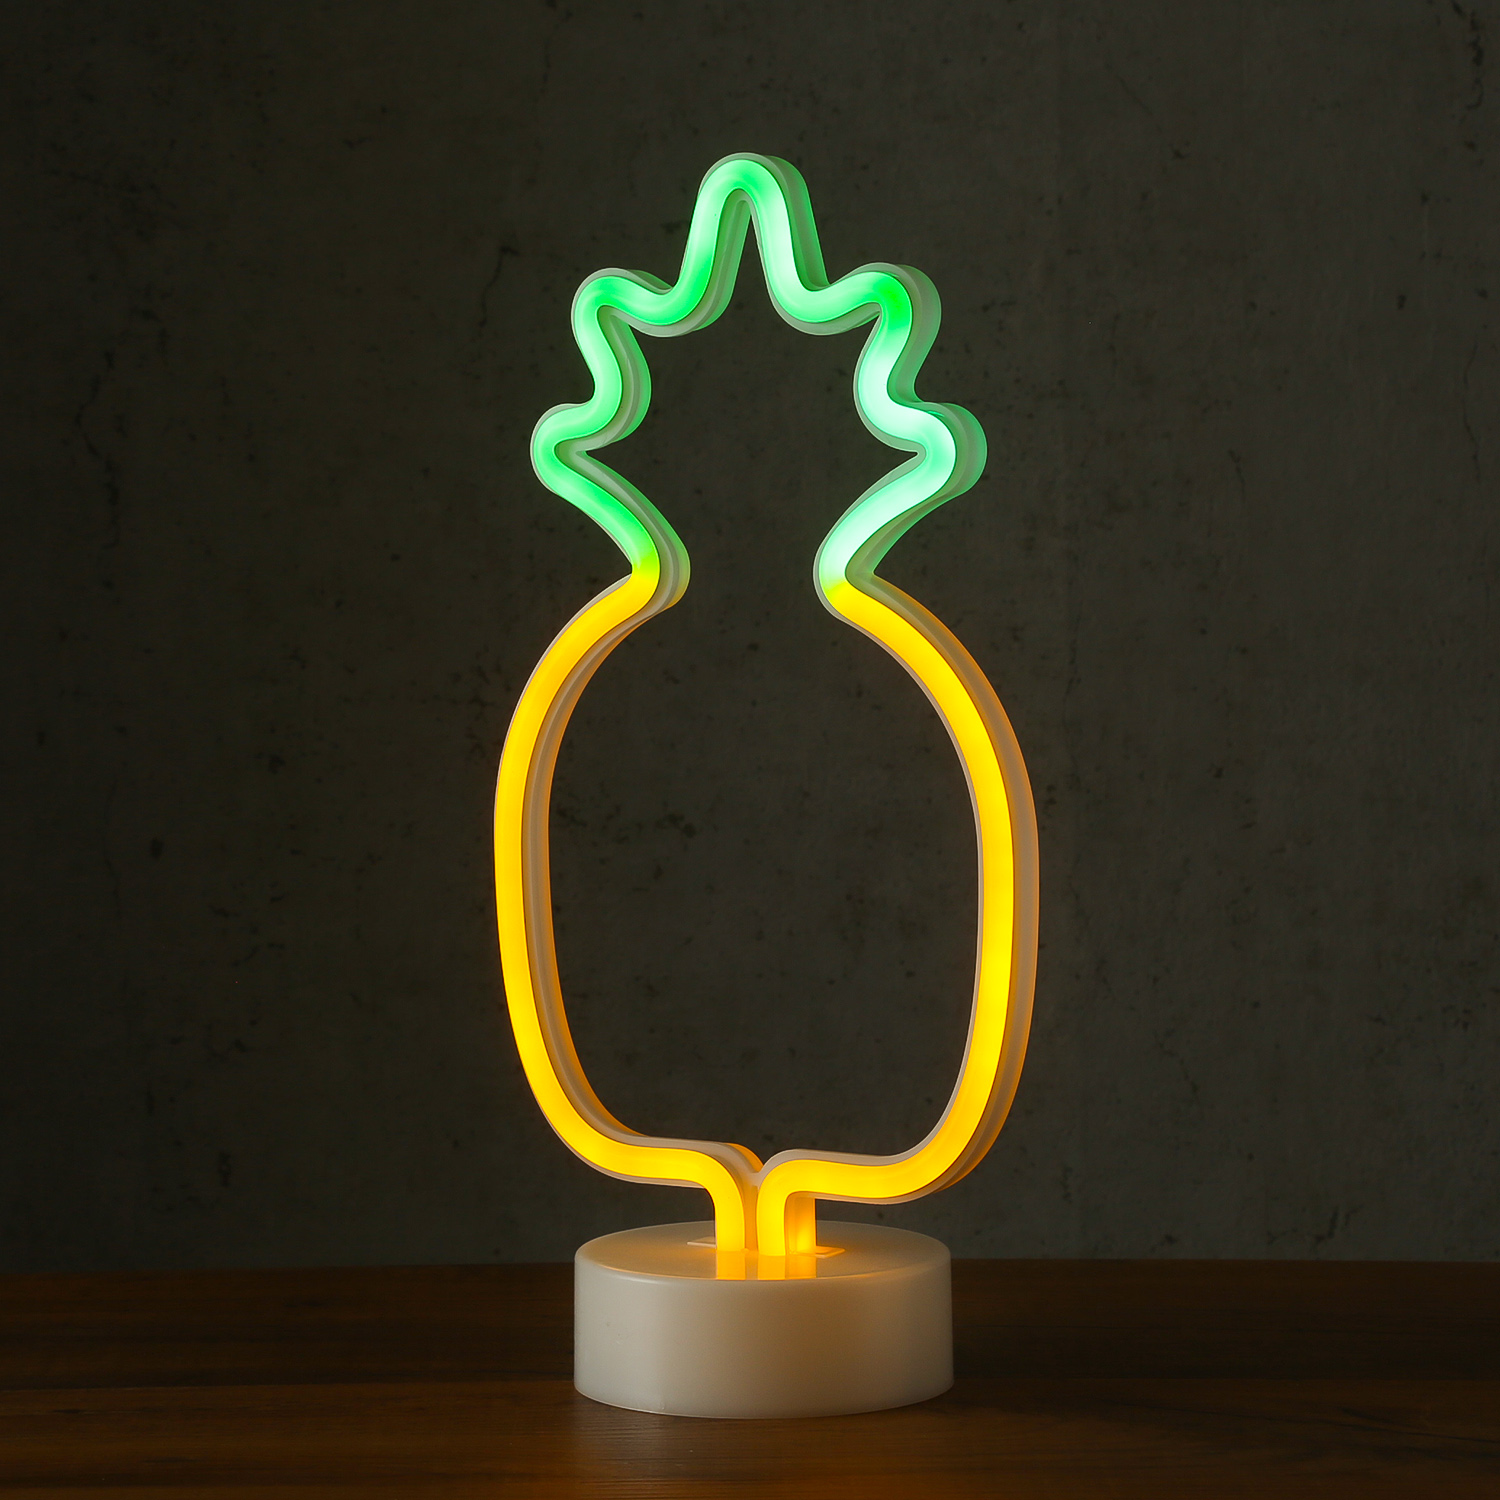 LED Neonlampe ANANAS - Silhouette Dekoleuchte - Batteriebetrieb - H: 32,5cm - stehend - gelb, grün